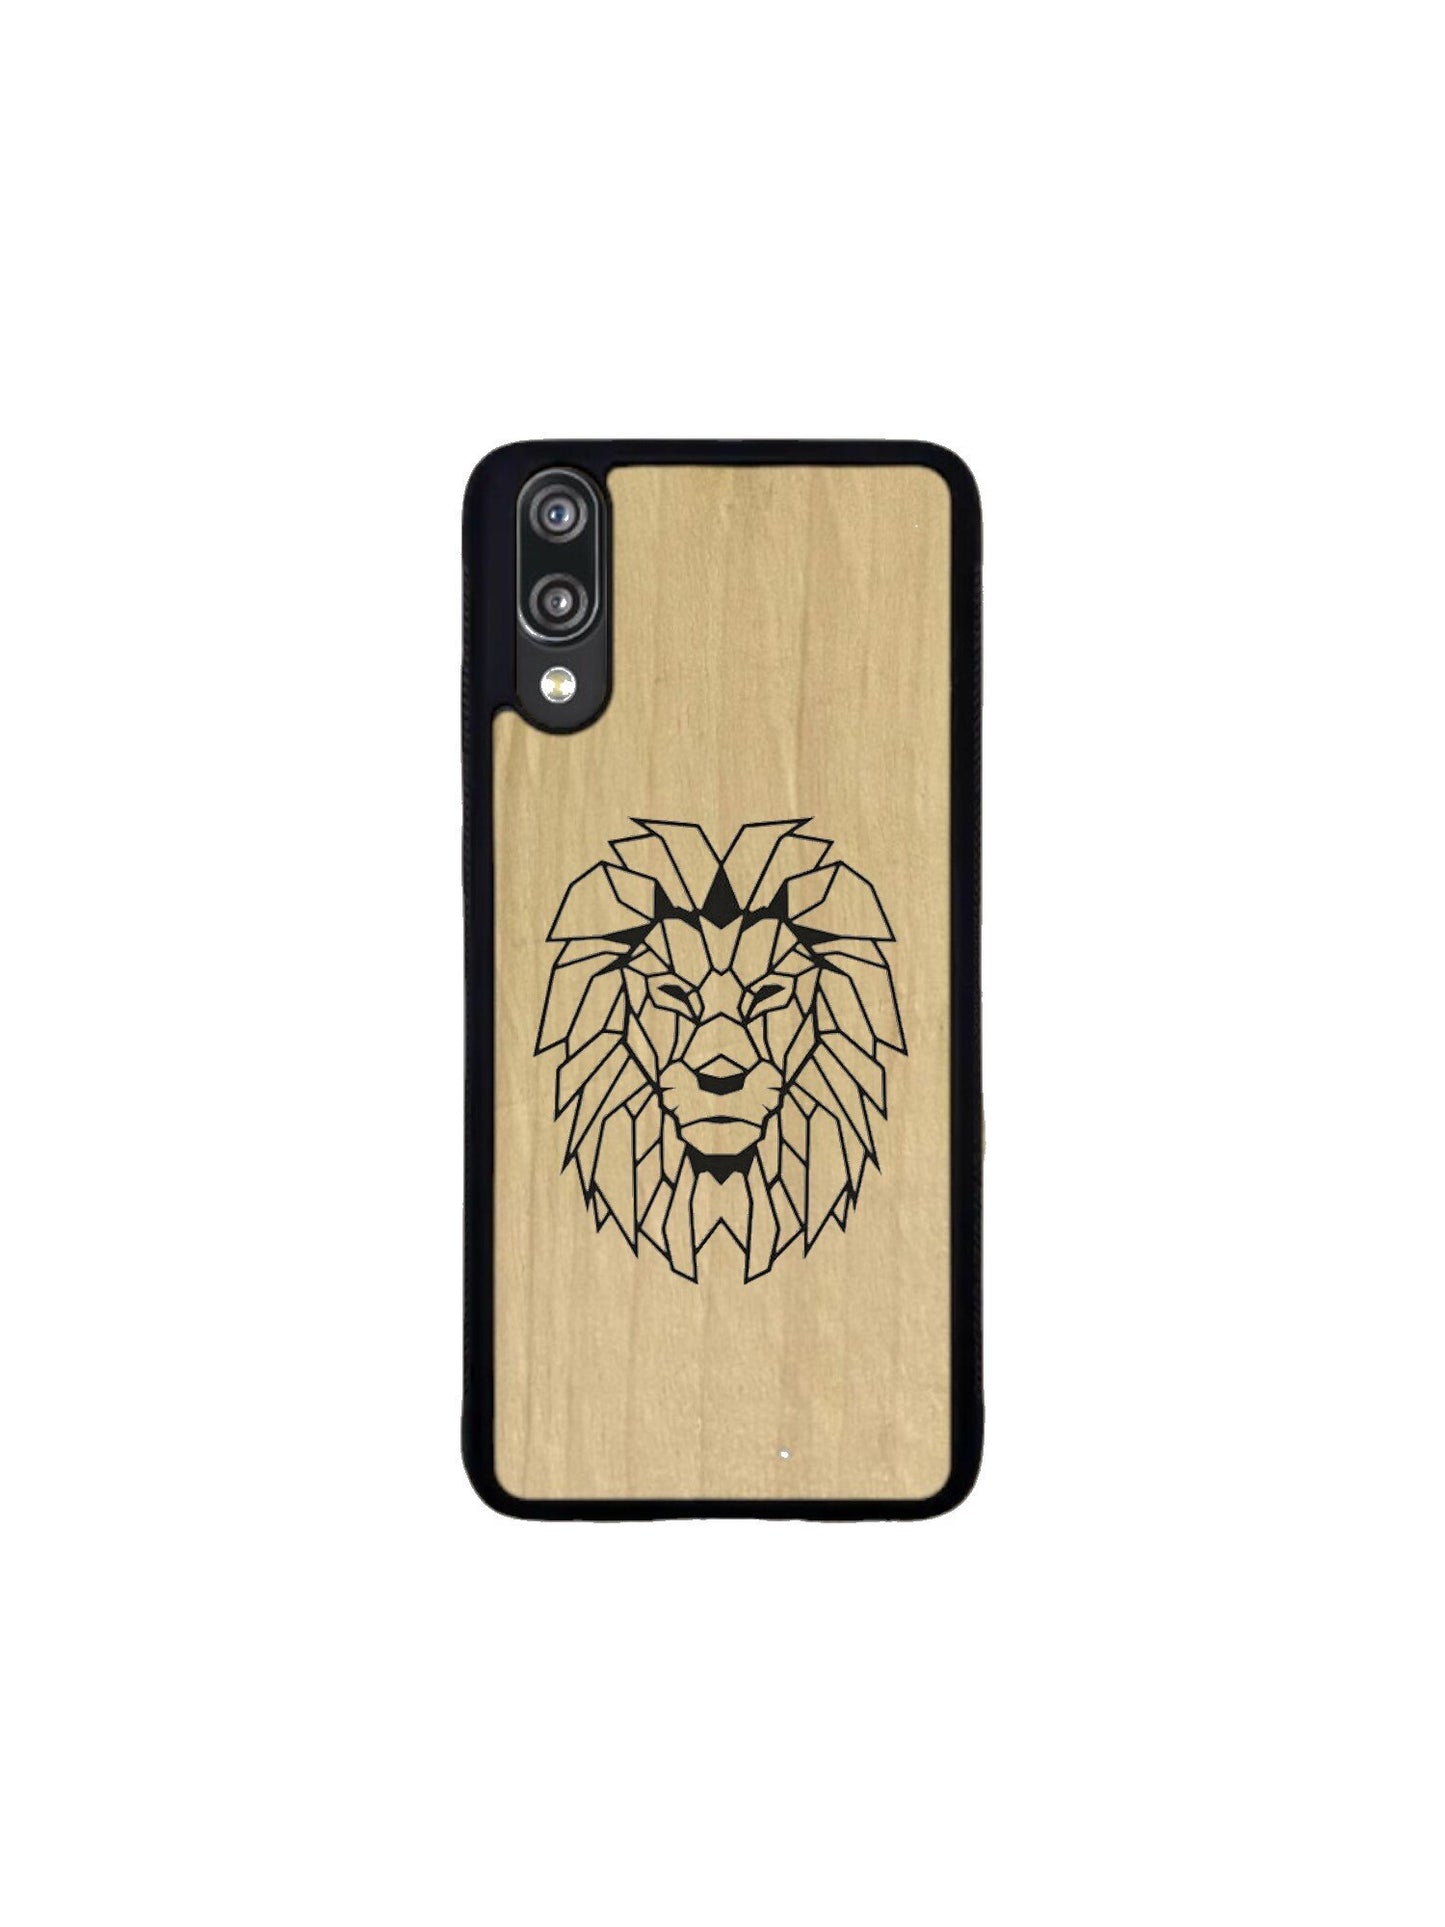 Huawei P case - Lion engraving